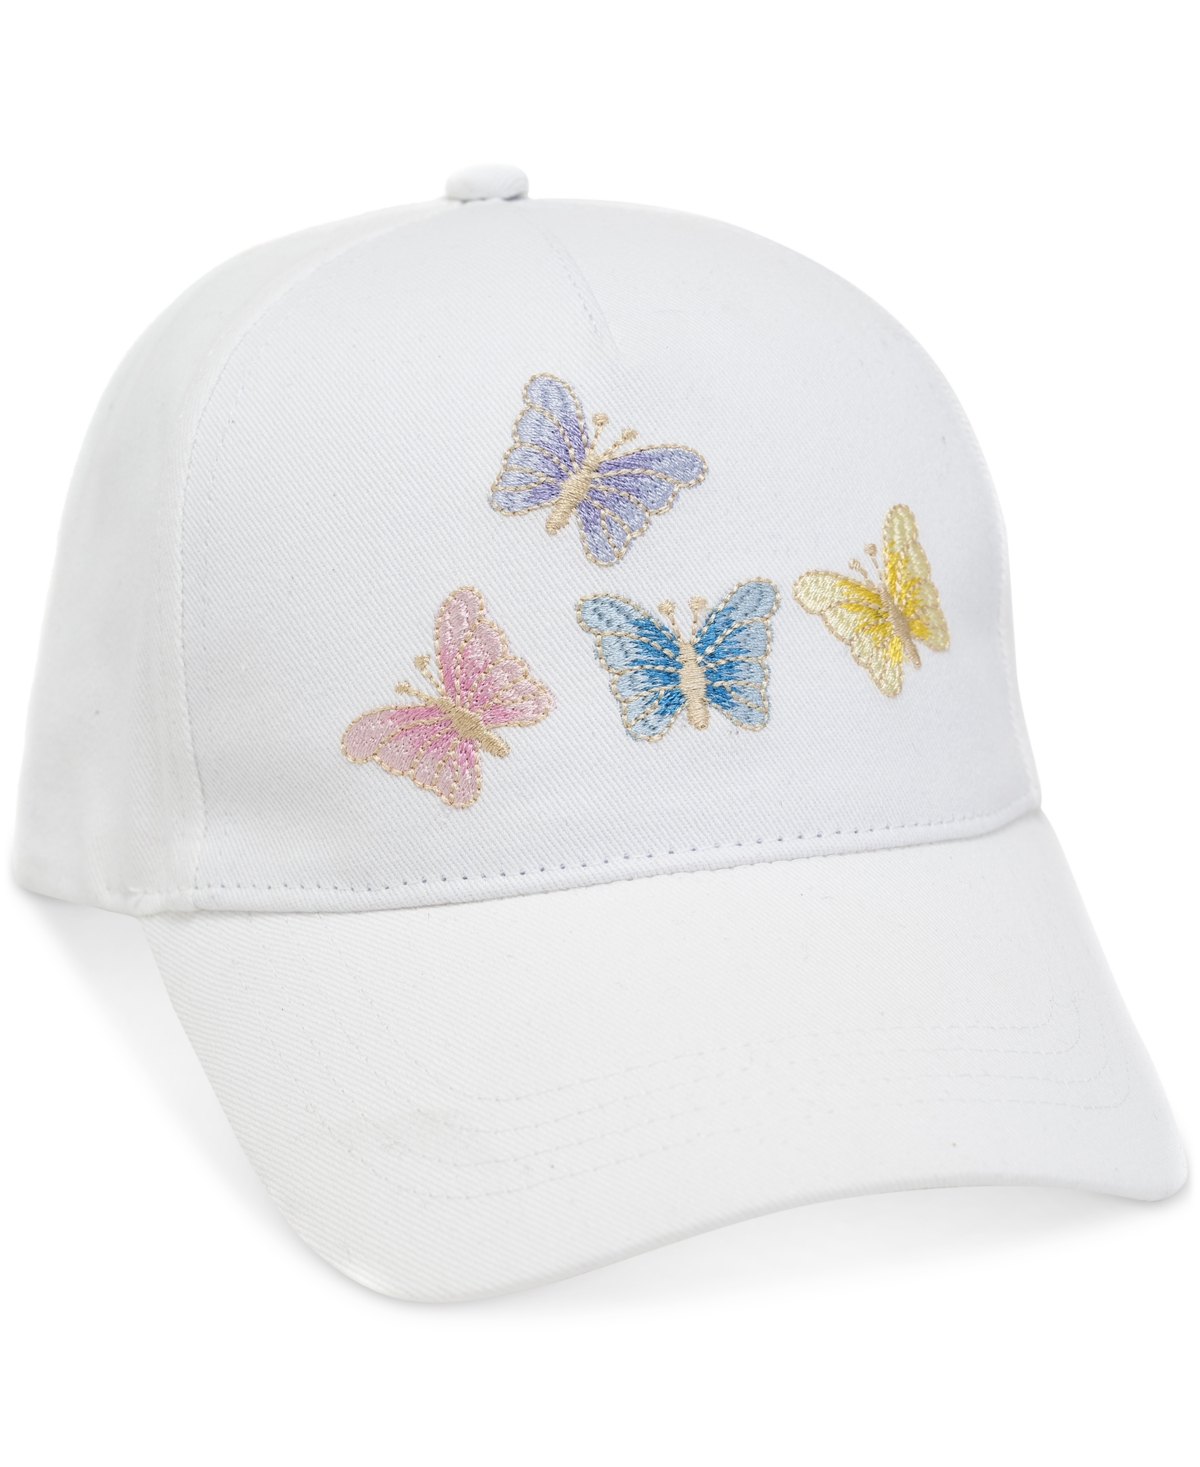 Women's Embroidered Butterflies Baseball Cap - White